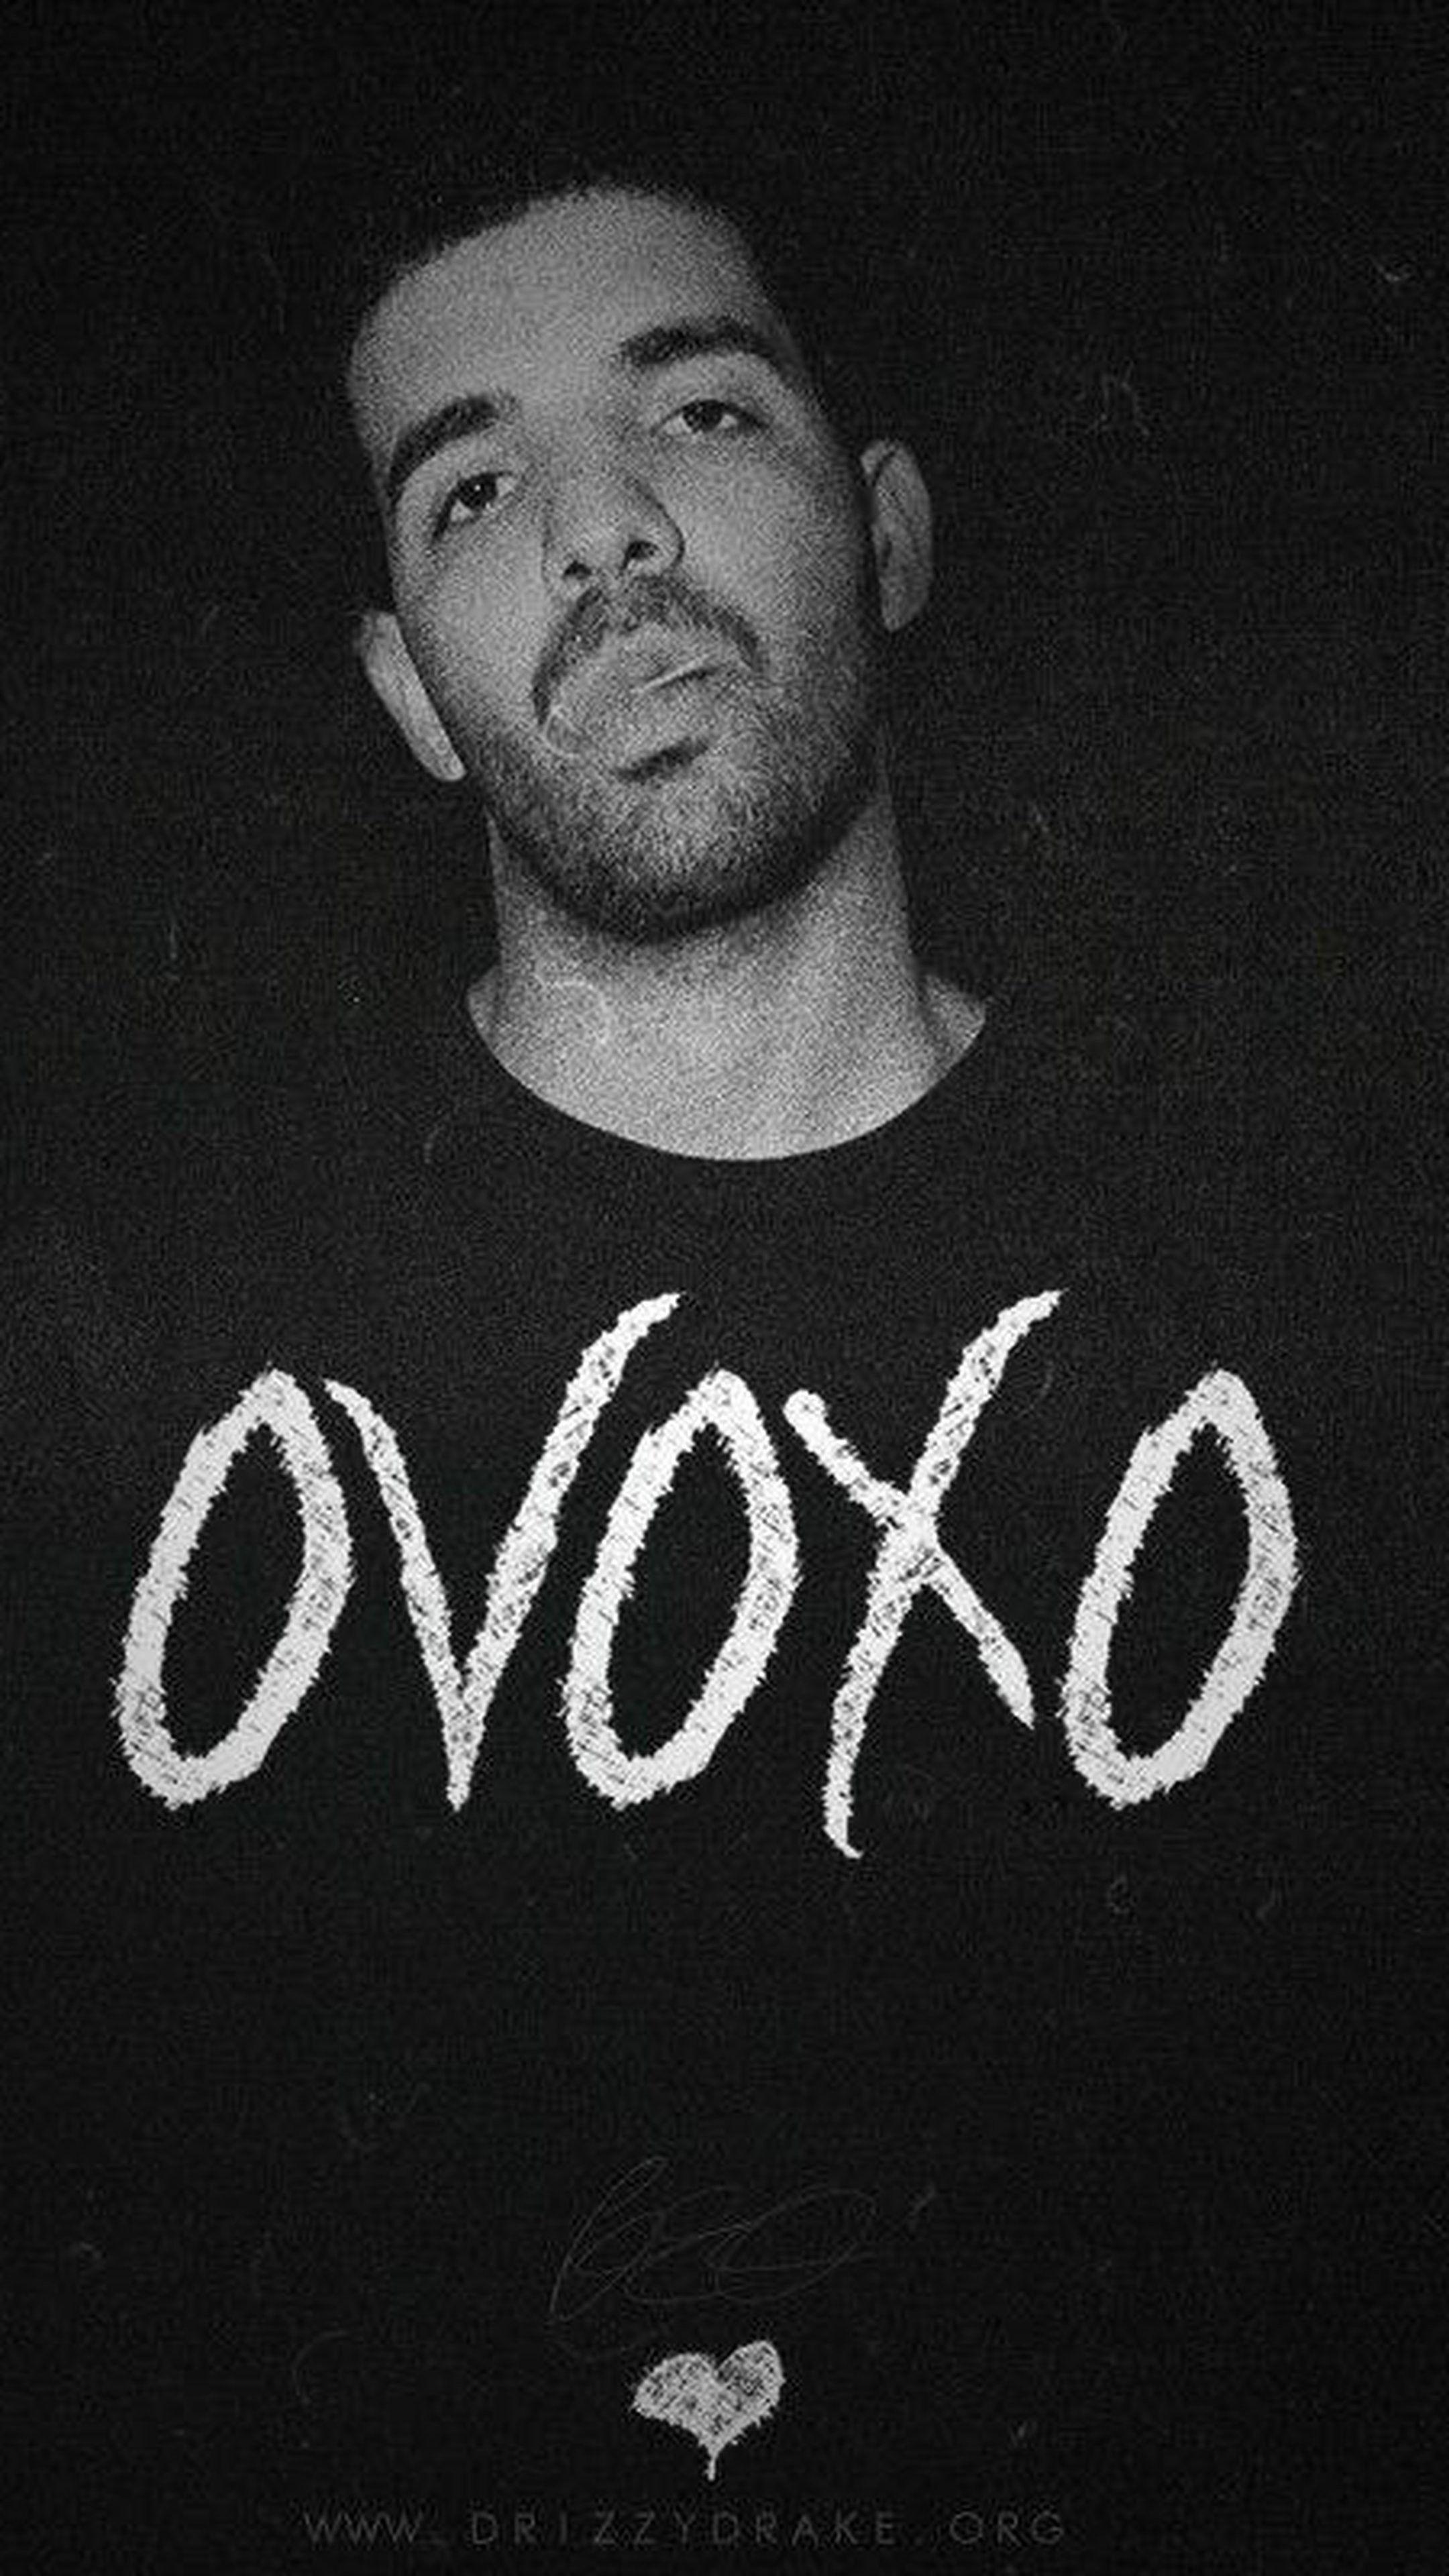 Drake Black and White Logo - 77+ Drake Ovo Wallpapers on WallpaperPlay